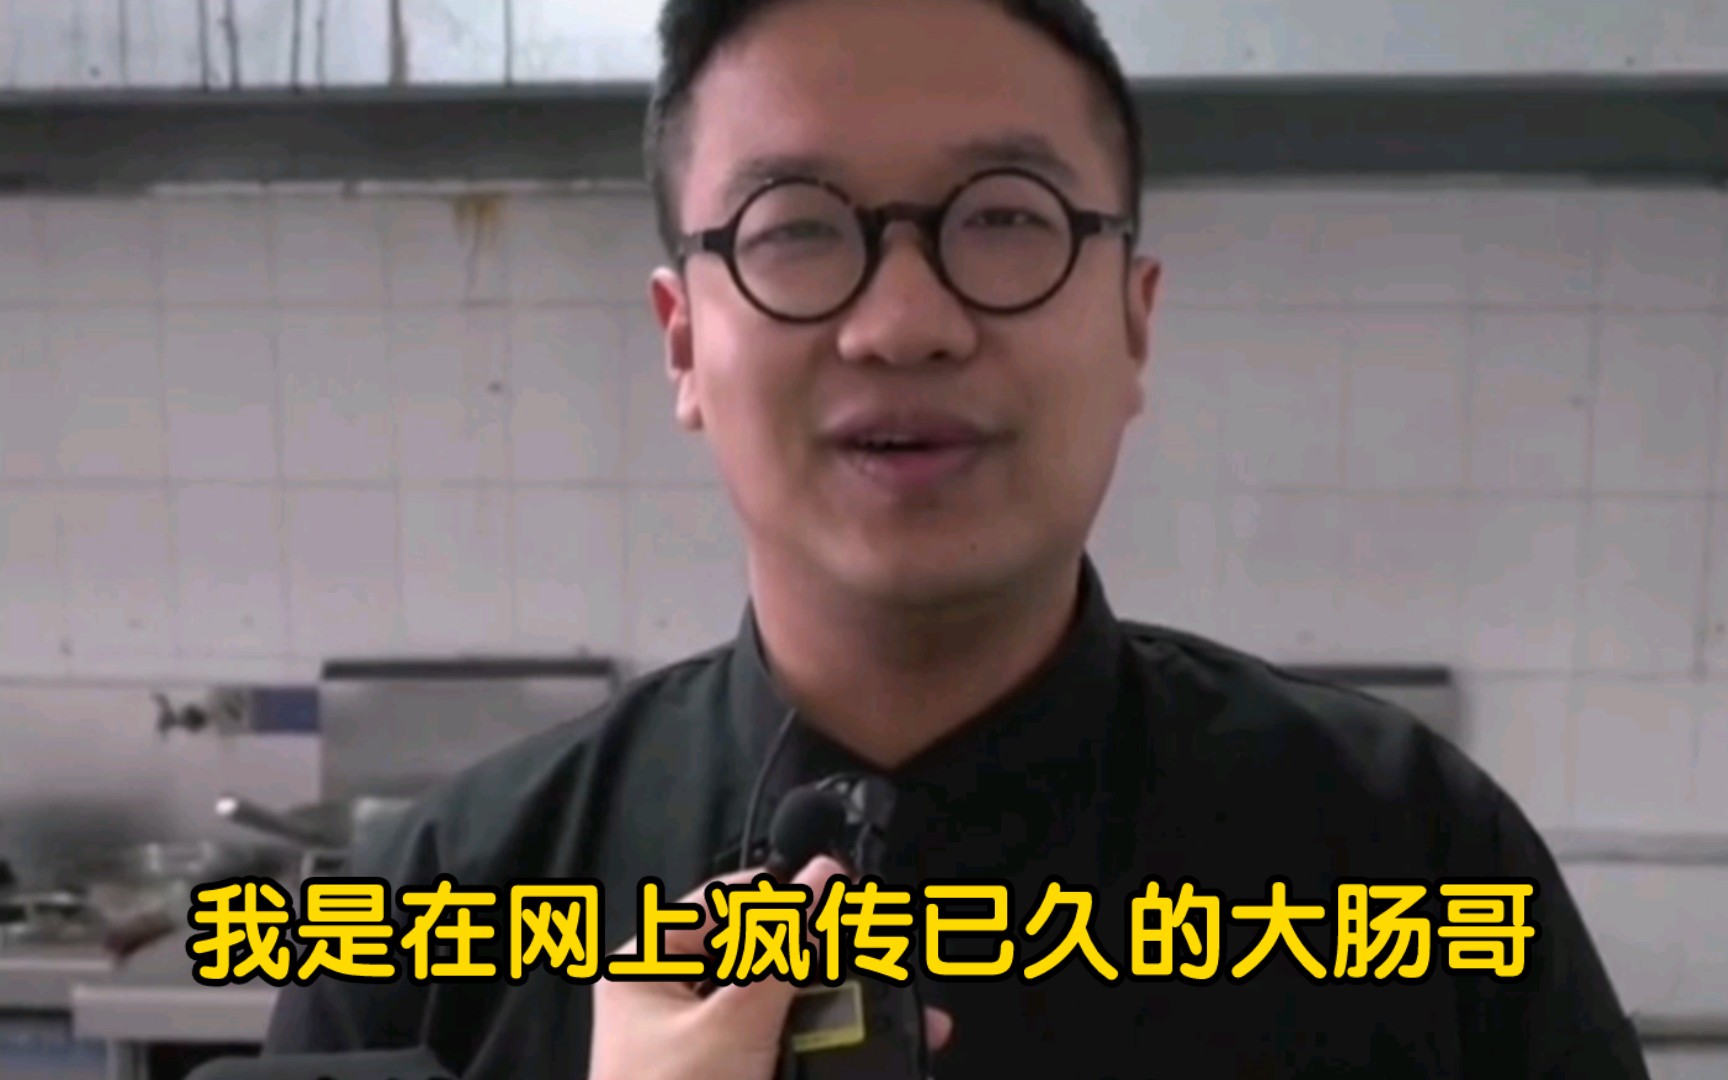 上新闻了！顶级厨师俞涛接受专访谈九转大肠热梗